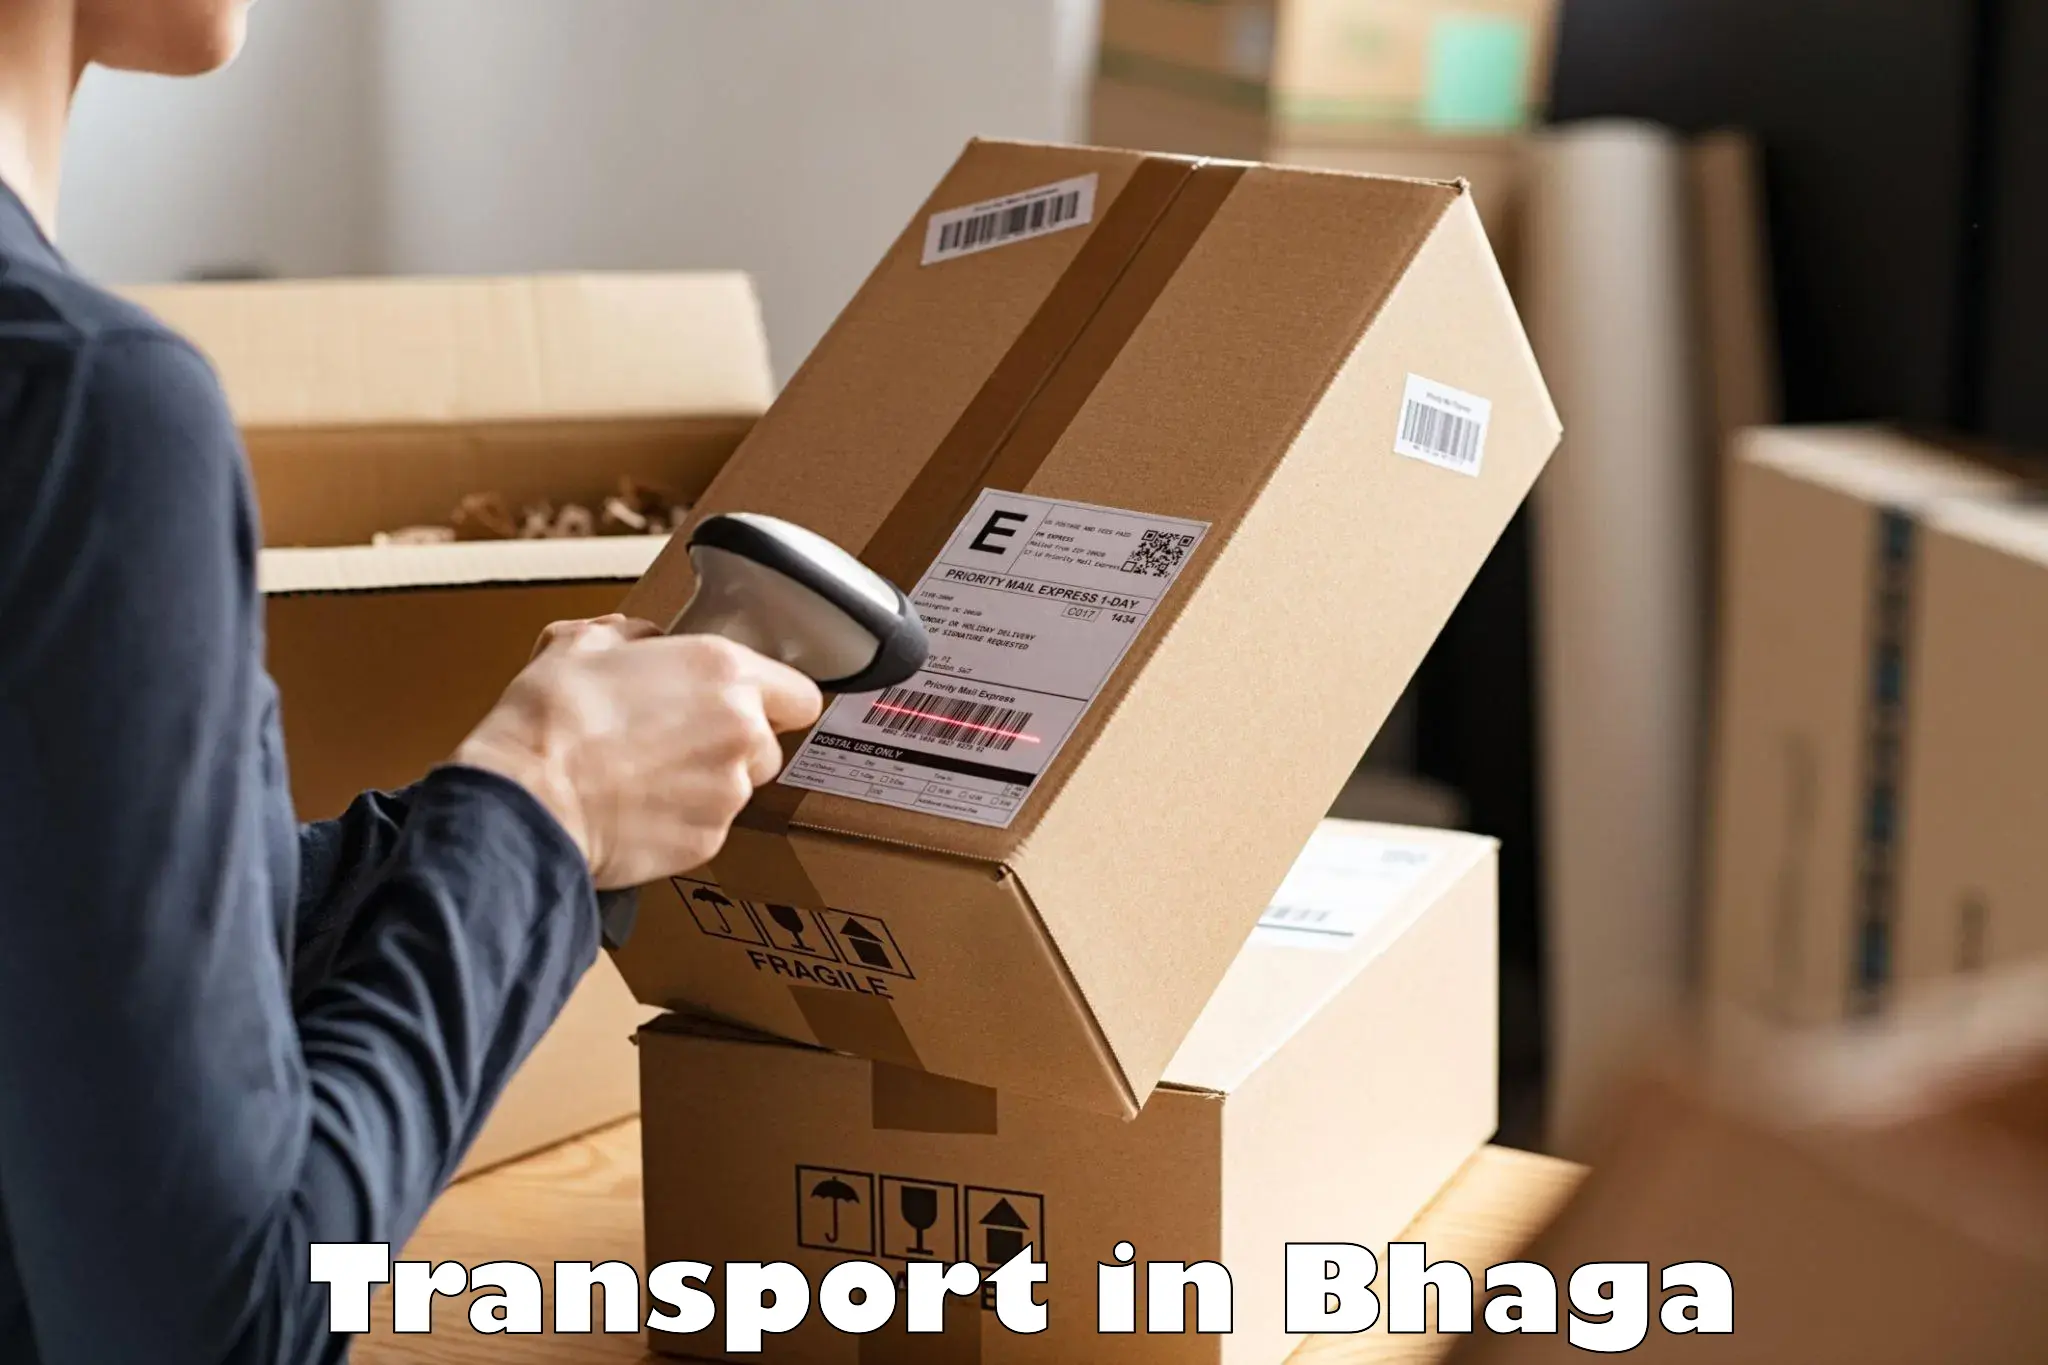 Interstate goods transport in Bhaga